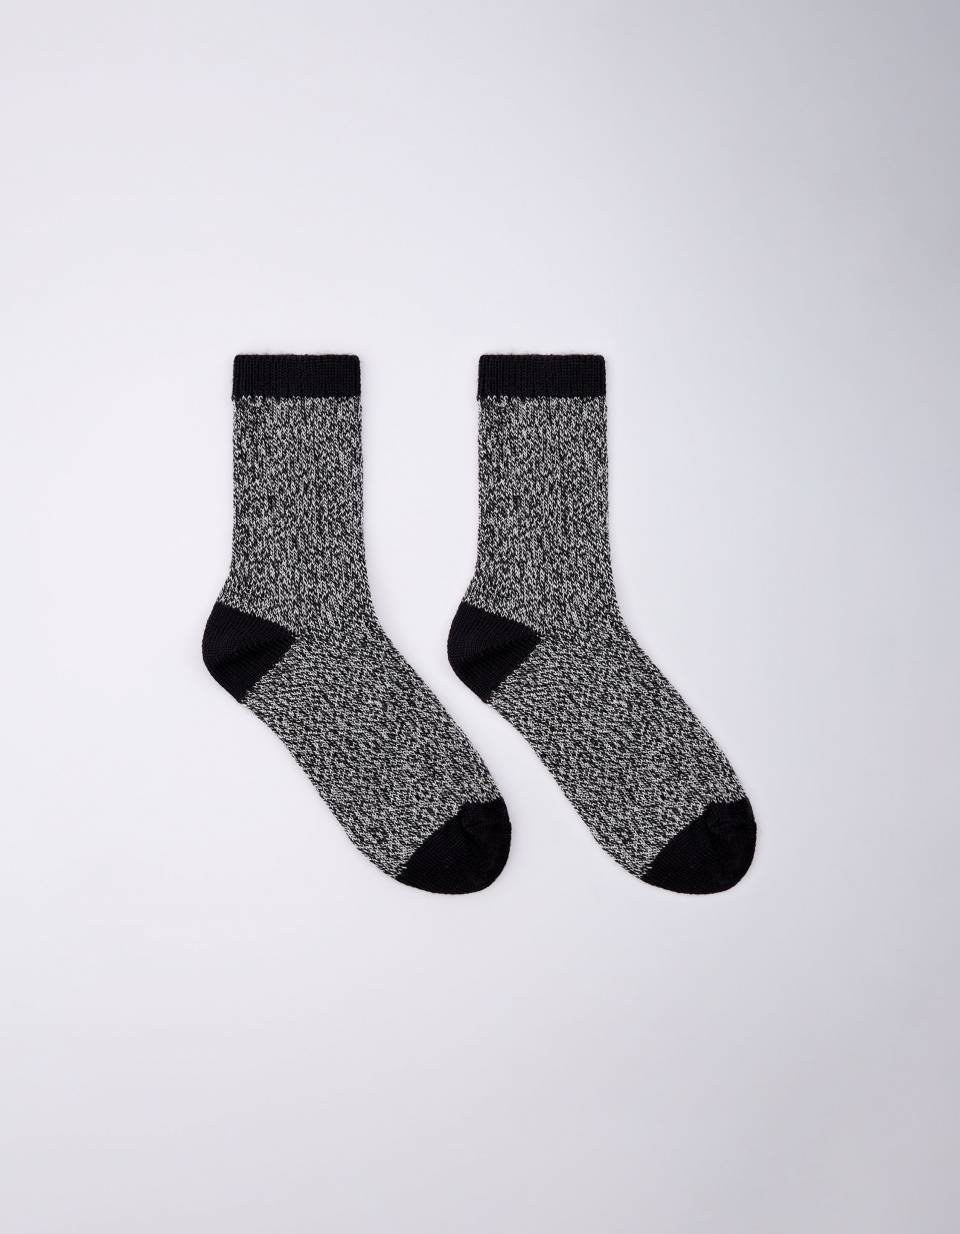 Вязаные носки шерстяные для мальчиков женские шерстяные носки вязаные носки носки башмак подарок 8 марта